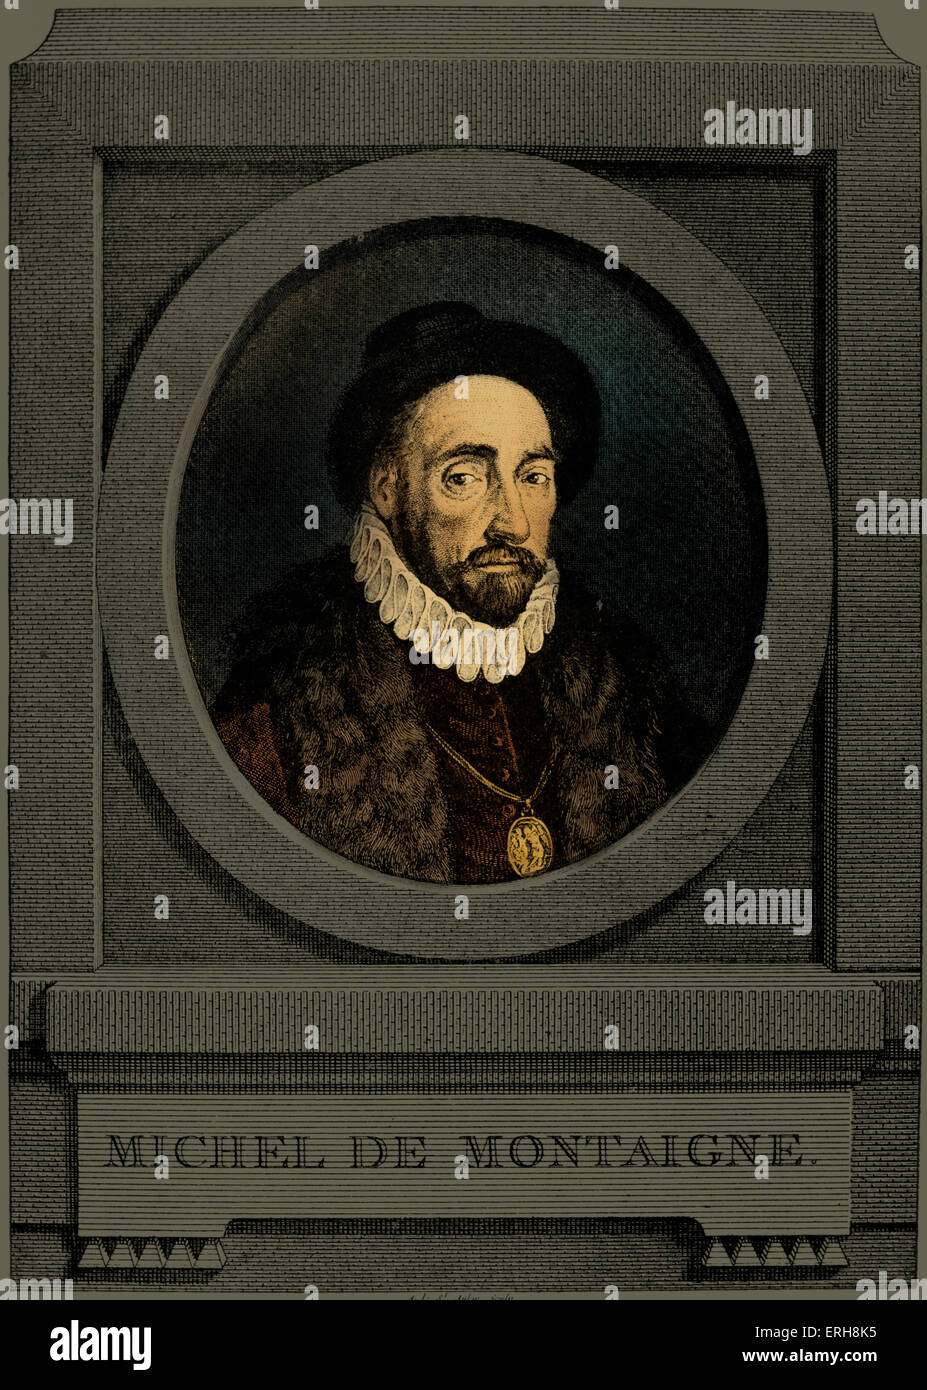 Michel de Montaigne - portrait de l'écrivain français, le 28 février 1533 - 13 septembre 1592. Gravure de Charles Germain de Saint Aubin. Portrait en médaillon, frontispice de Montaigne's 'Voyage en Italie'. Banque D'Images